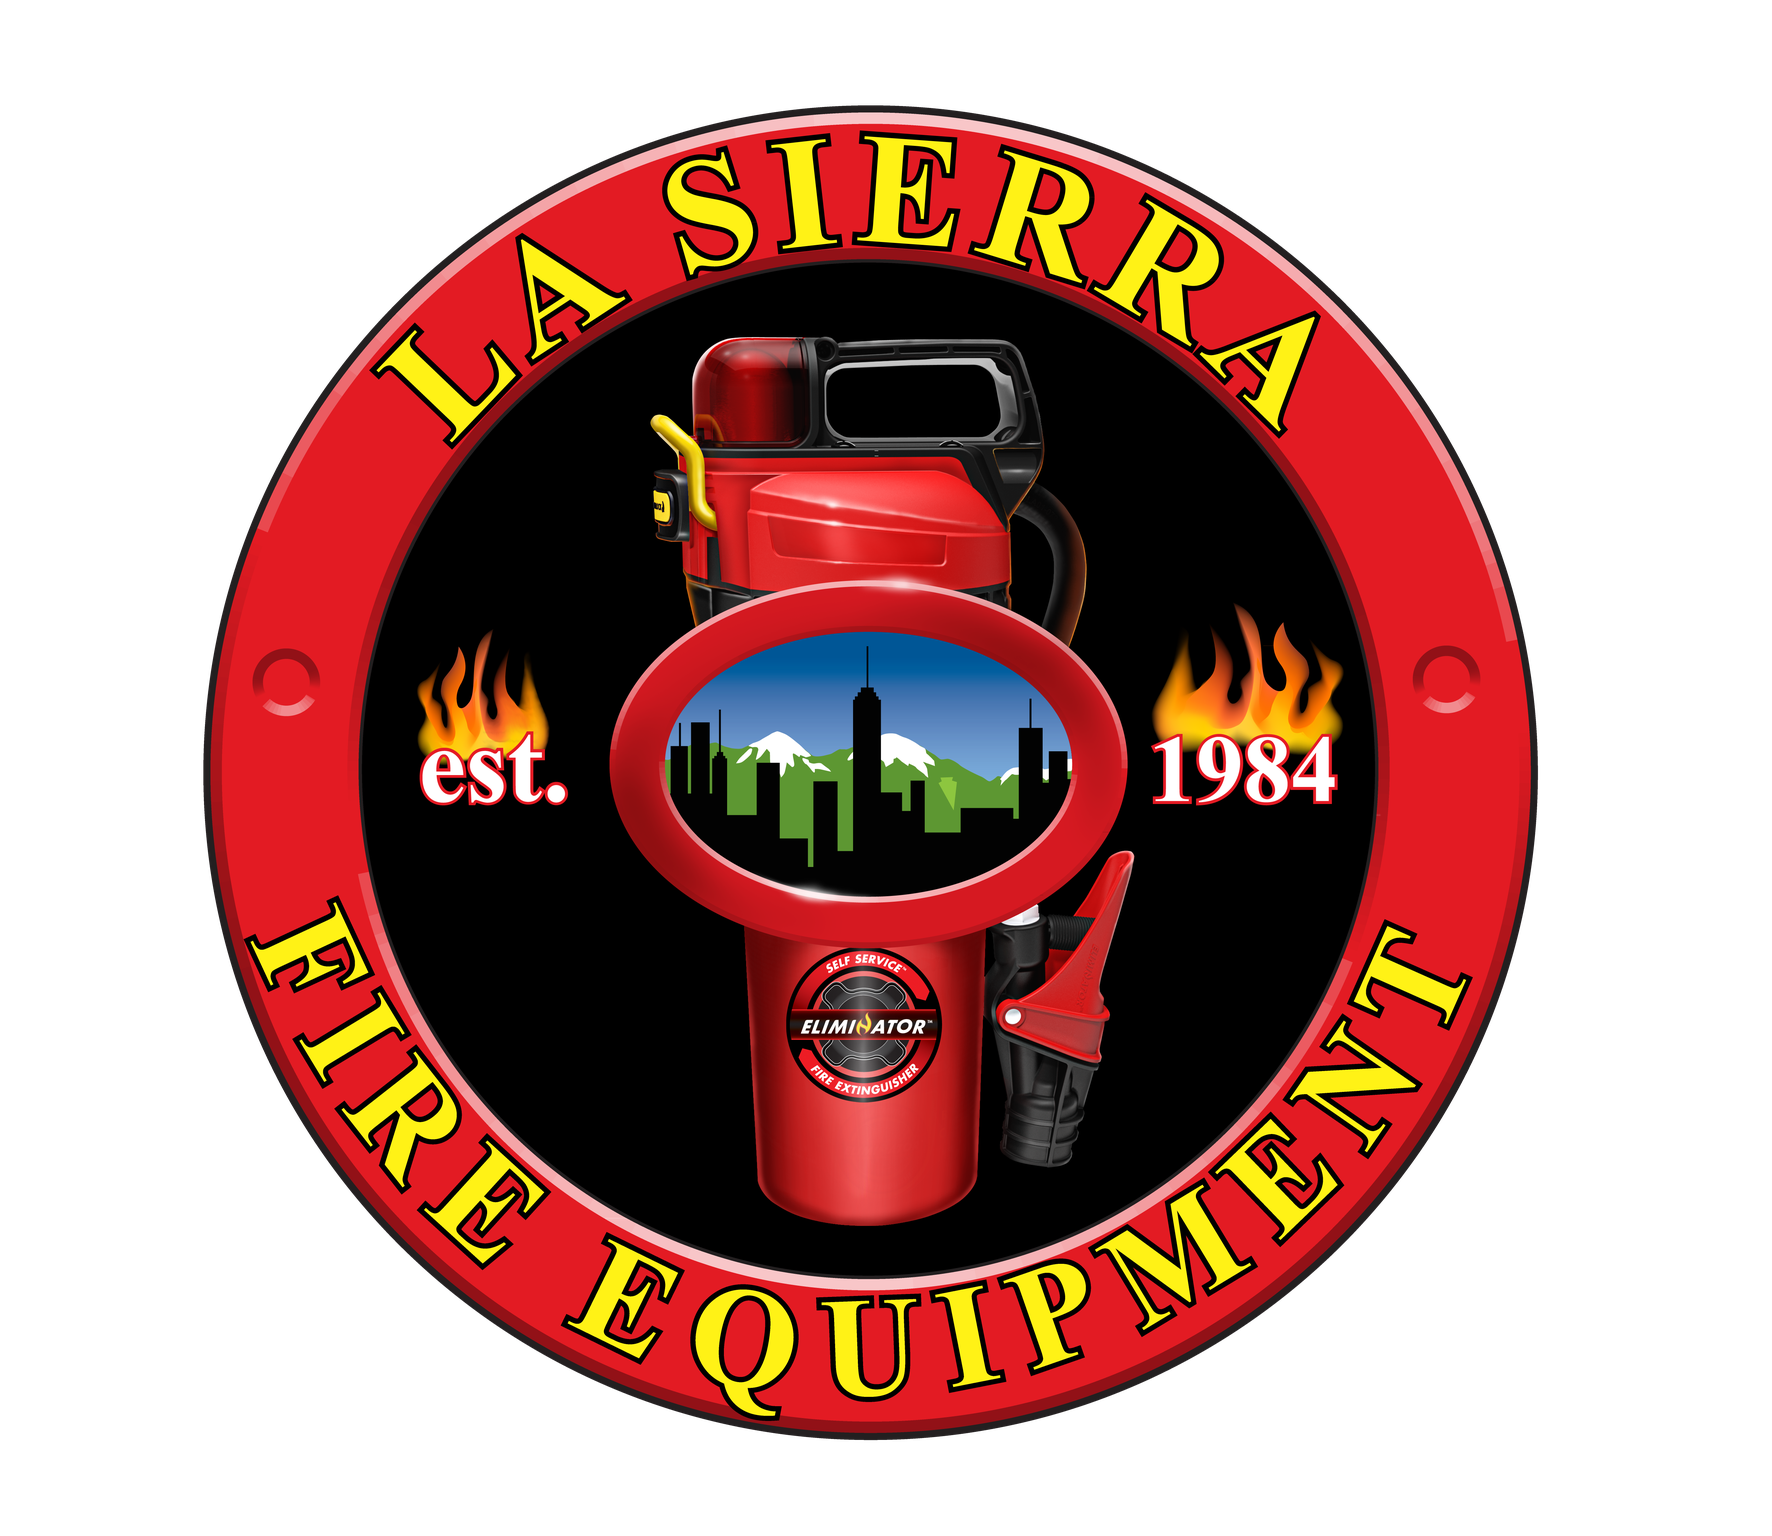 La Sierra Fire Equipment